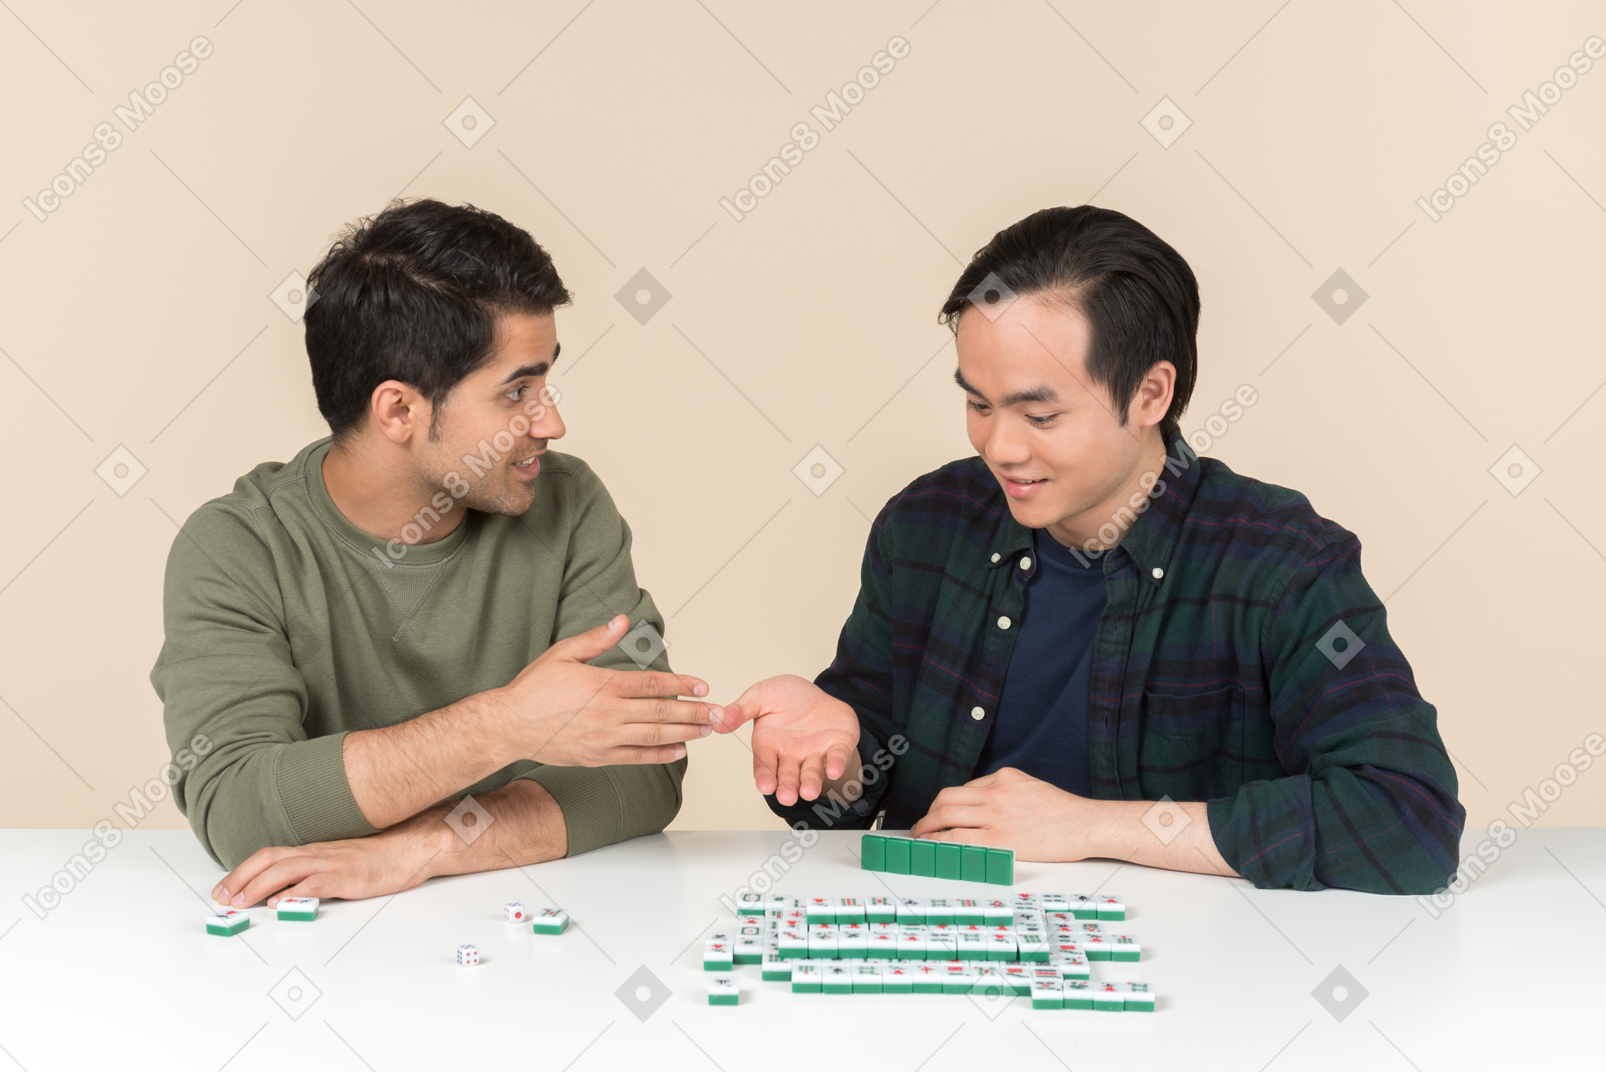 Jeunes amis interraciaux assis à la table et jouant au jeu de brouillage